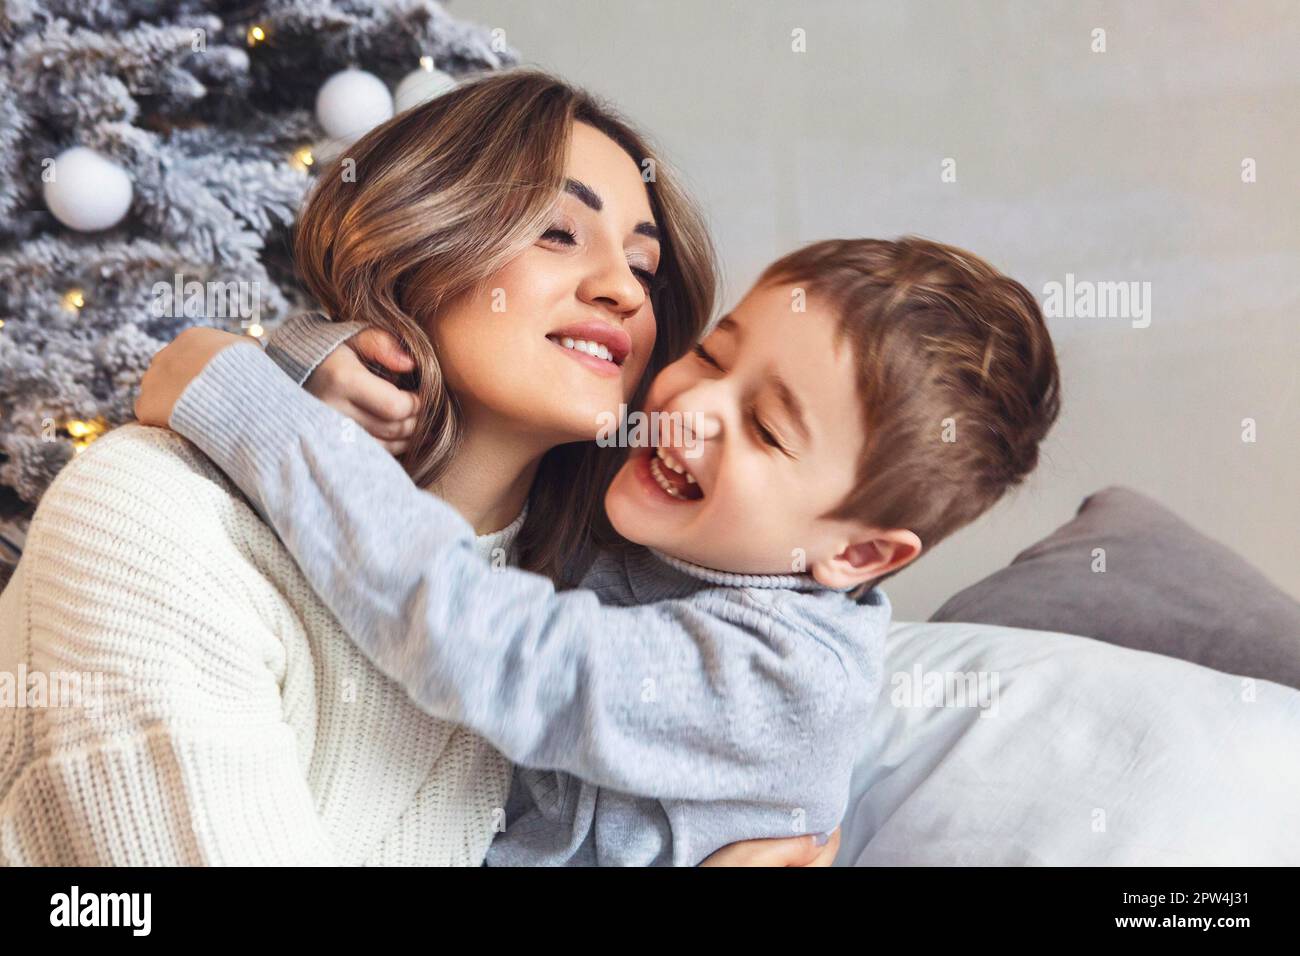 Ein kleiner Vorschuljunge hilft Mutter beim Dekorieren des Weihnachtsbaums zu Hause, mutter und kleiner Sohn schmücken zusammen Weihnachtsbaum, junge Familieneltern und Stockfoto